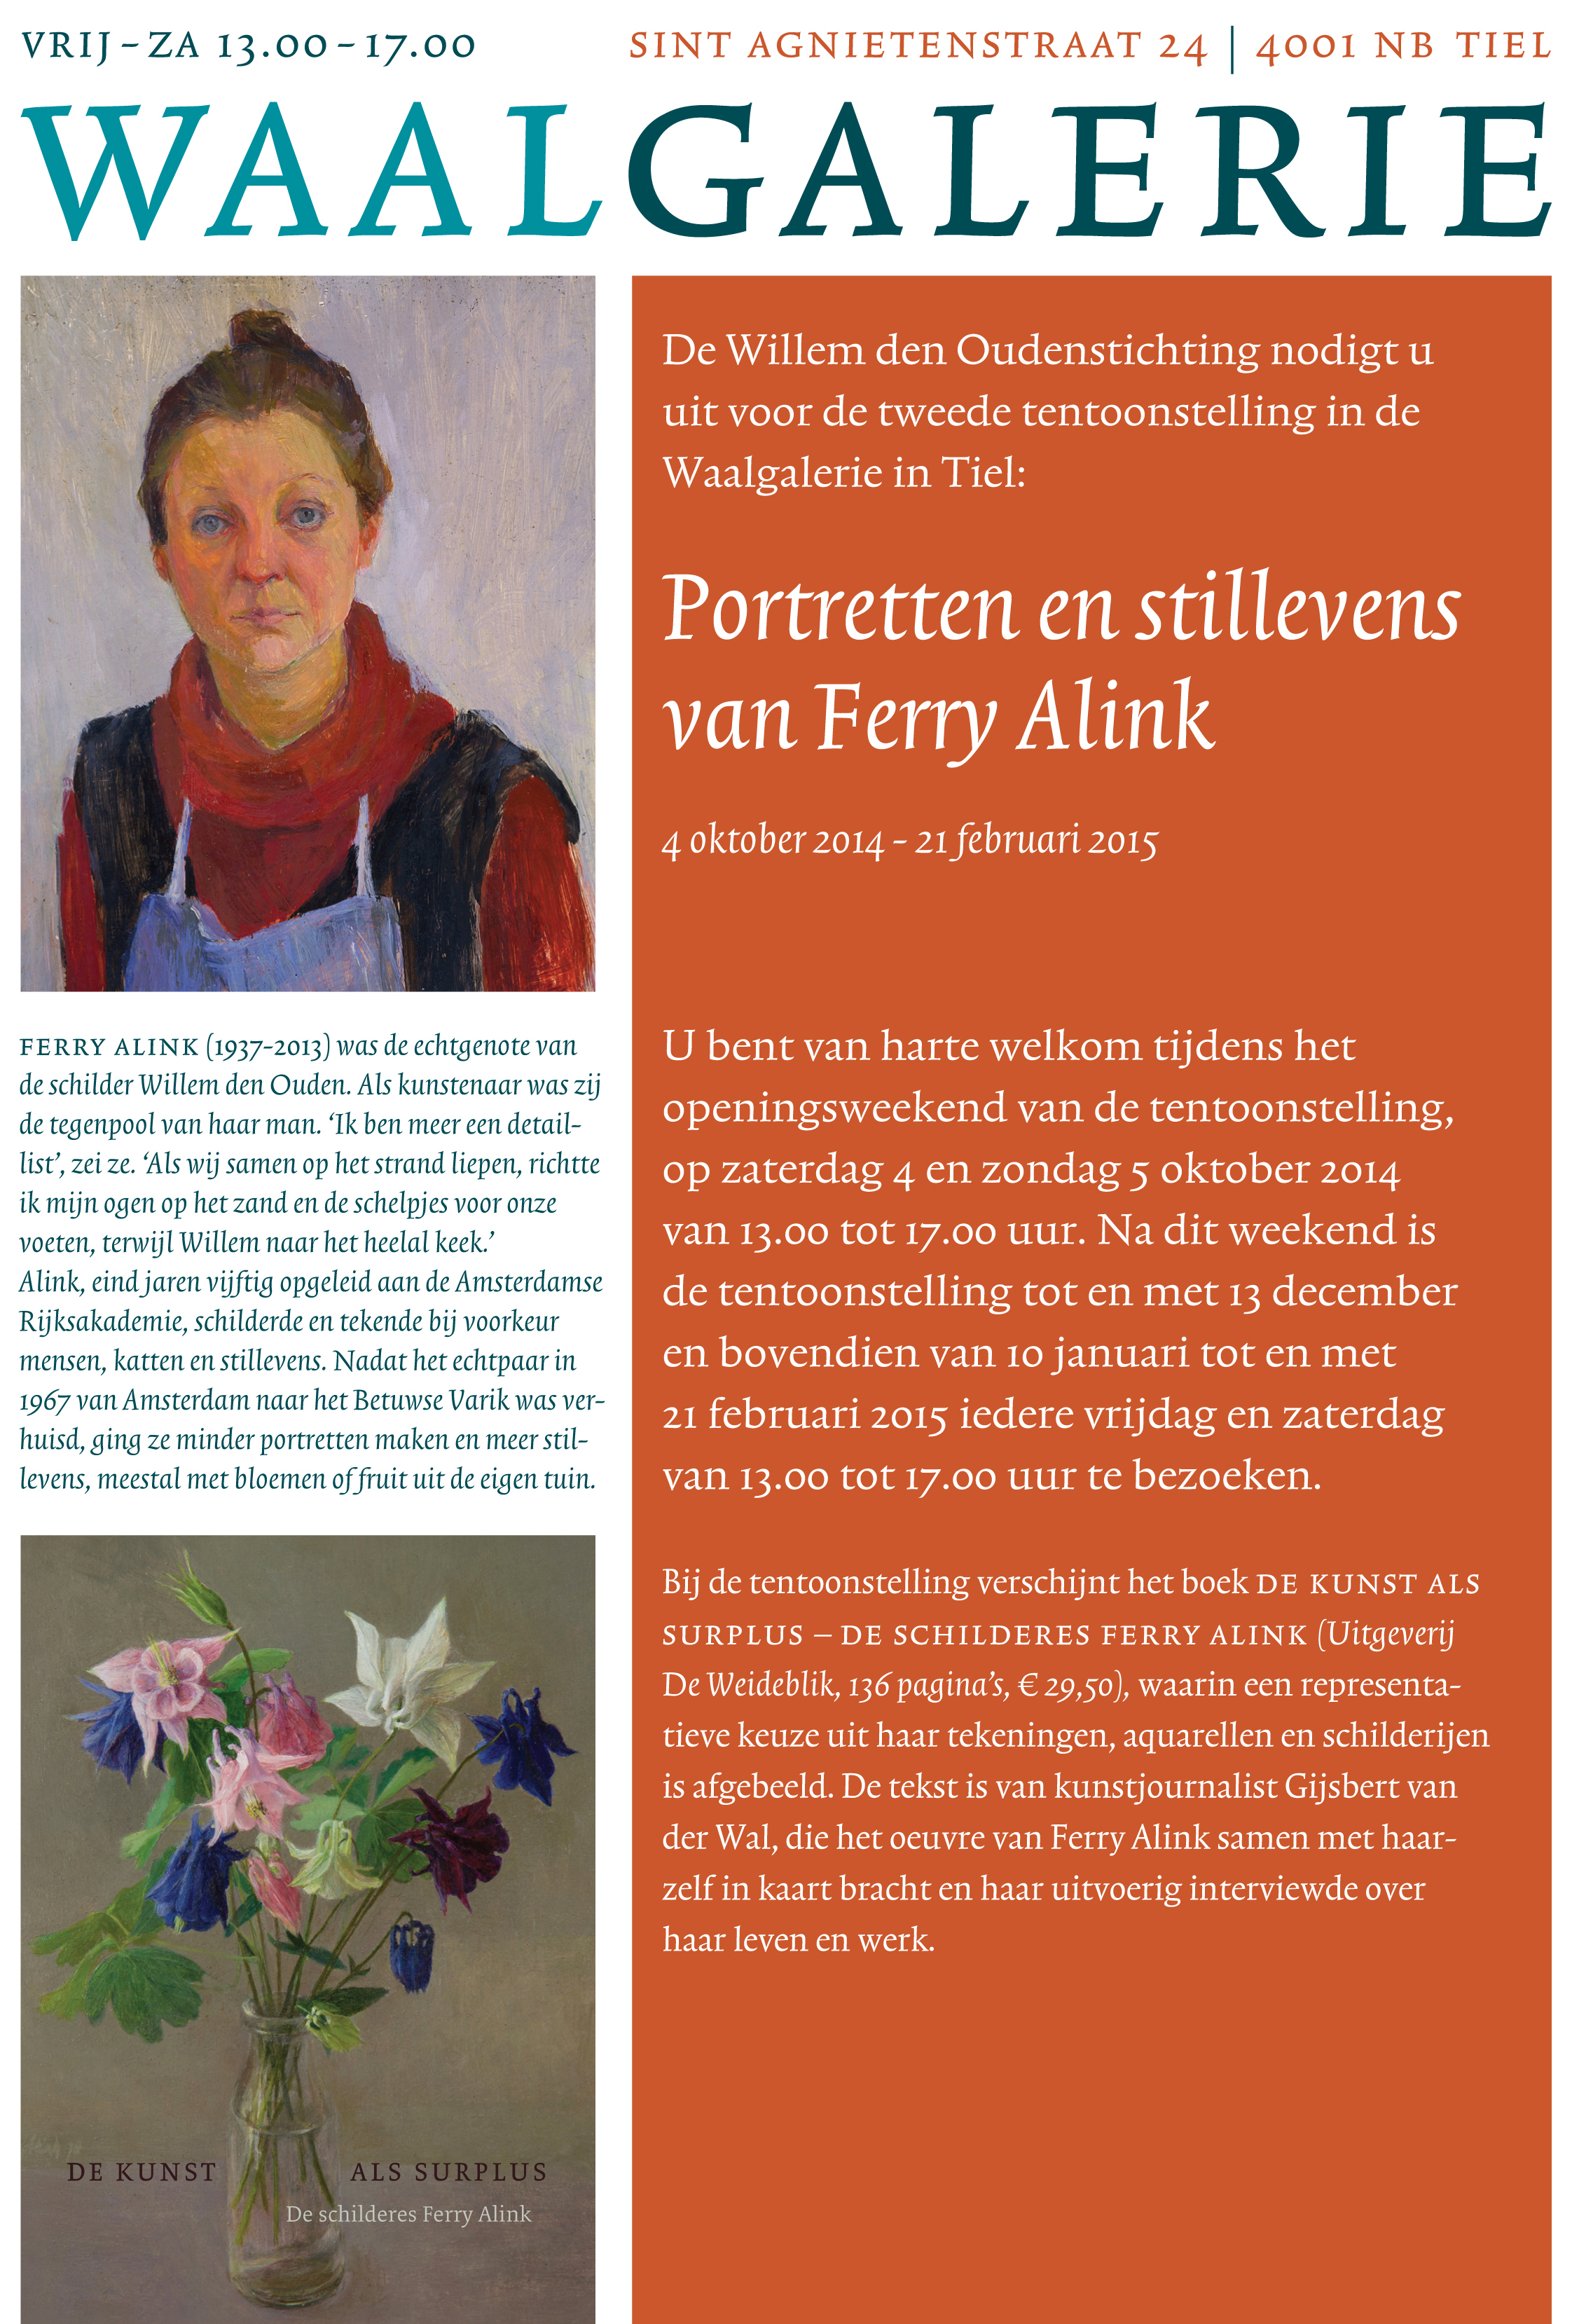 uitnodiging Ferry Alink Waalgalerie